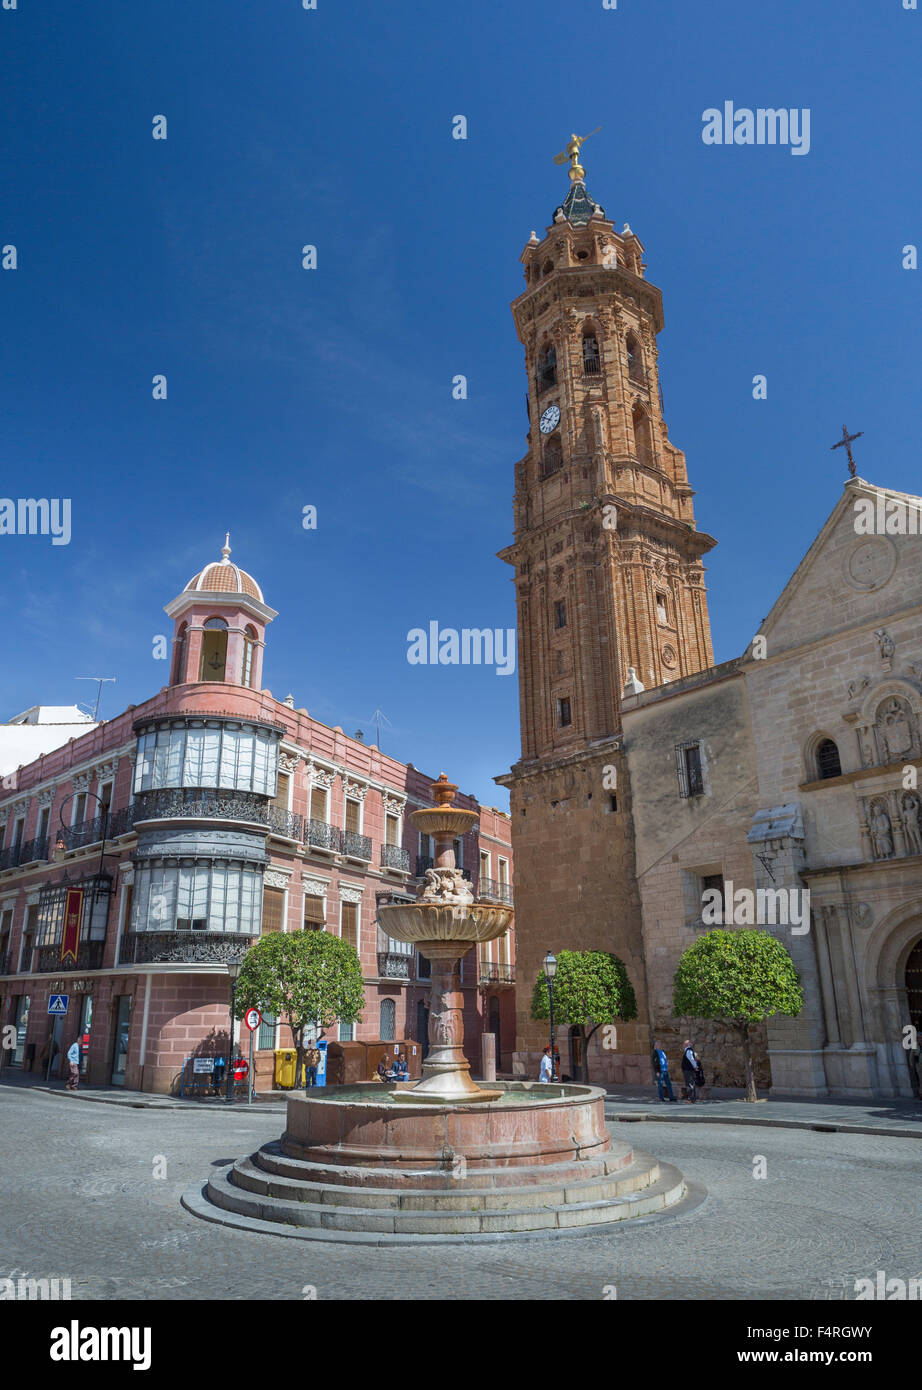 L'Andalousie, Antequera, ville, Malaga, Espagne, Europe, le ressort, l'architecture, le beffroi, colorée, centre-ville, fontaine, aucun peuple, puebl Banque D'Images